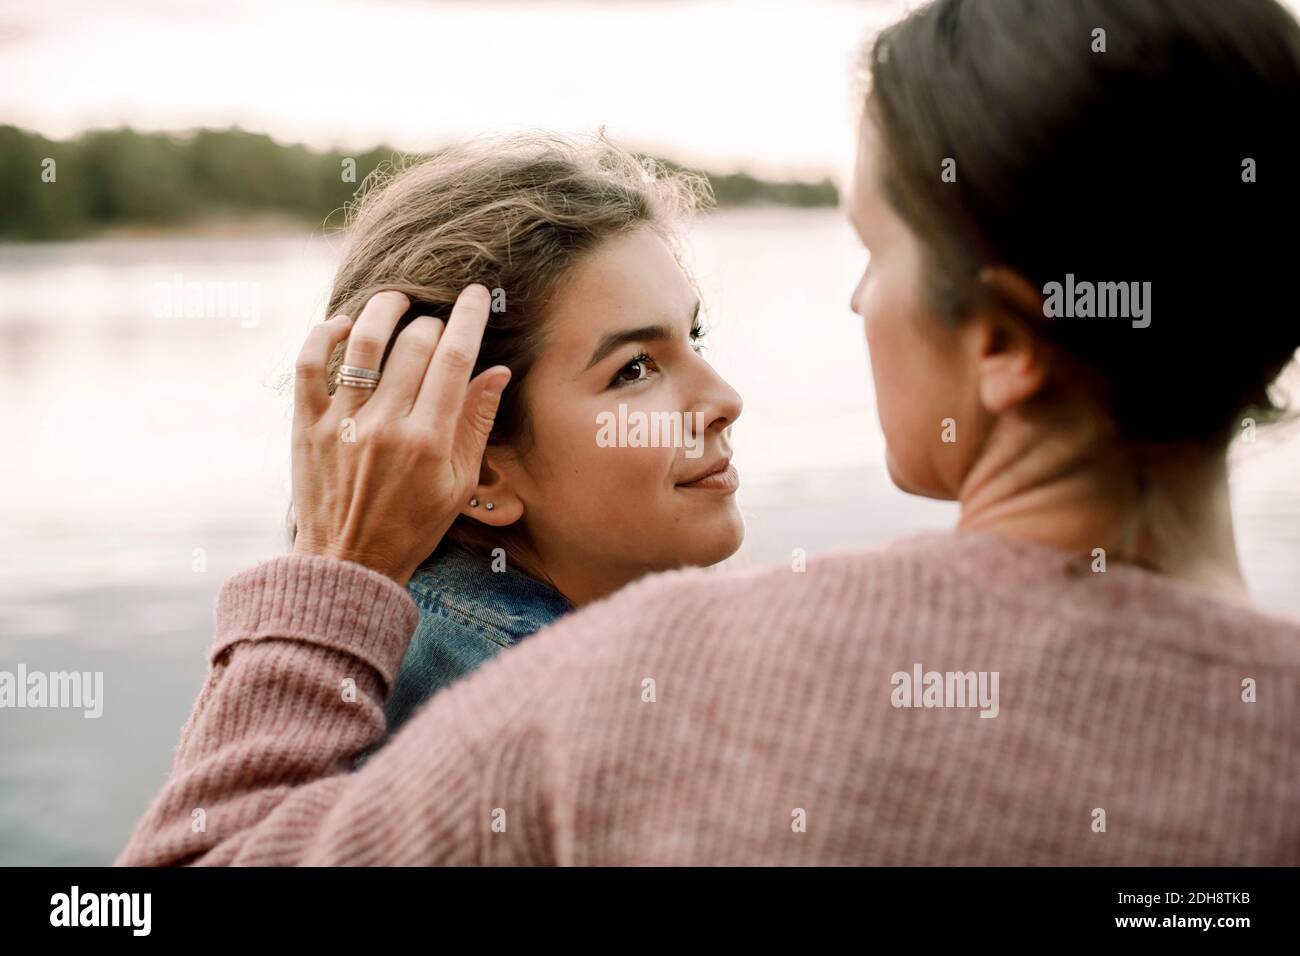 Una hija sonriente mirando a una madre cariñosa junto al lago Foto de stock